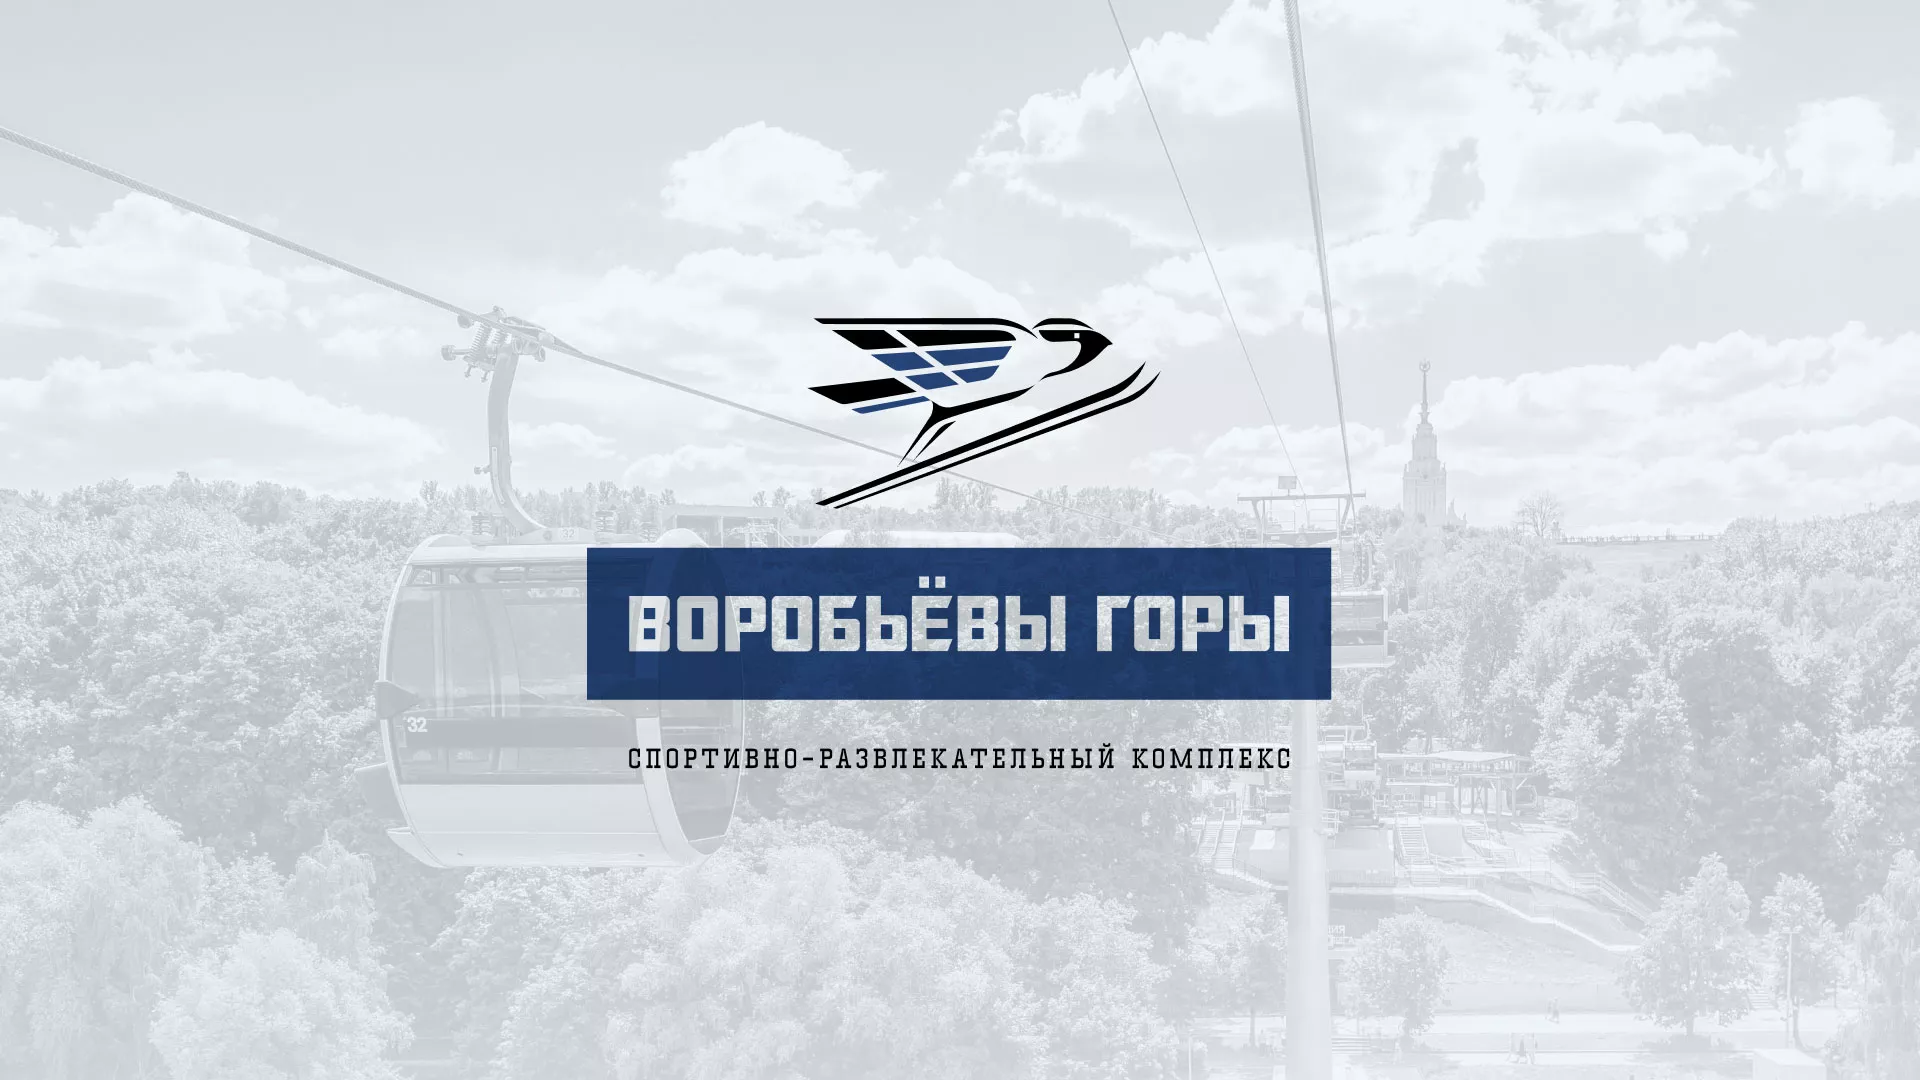 Разработка сайта в Южно-Сахалинске для спортивно-развлекательного комплекса «Воробьёвы горы»